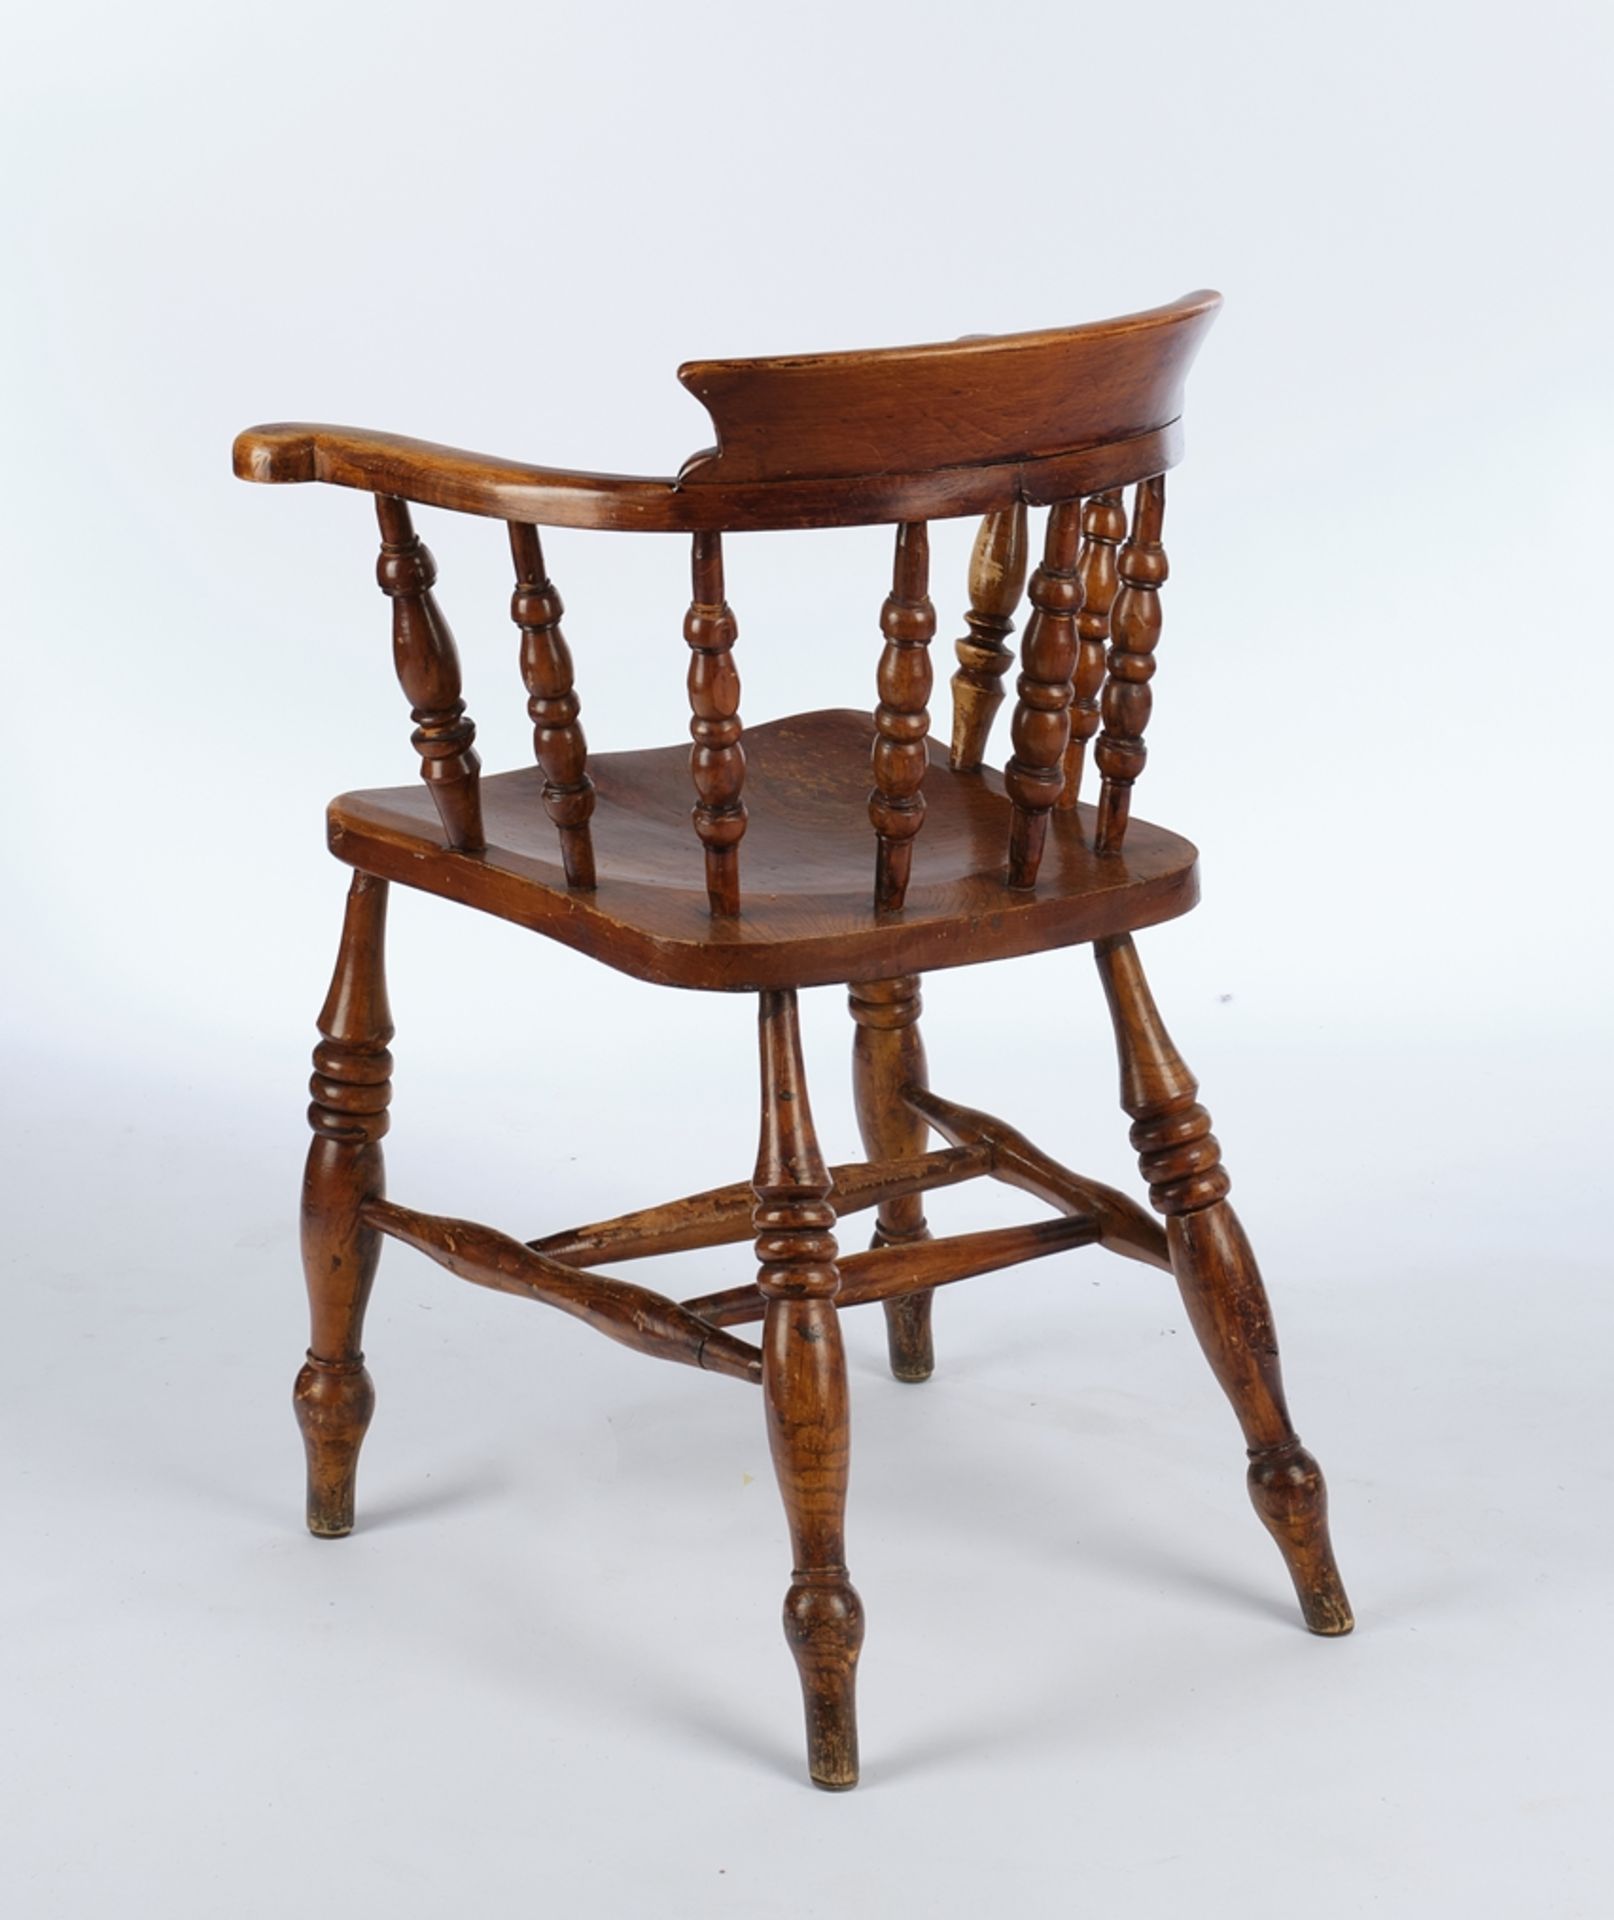 Satz von 4 Windsor Chairs, 19. Jh., Rüster, H. 81 cm, Gebrauchsspuren - Bild 3 aus 3